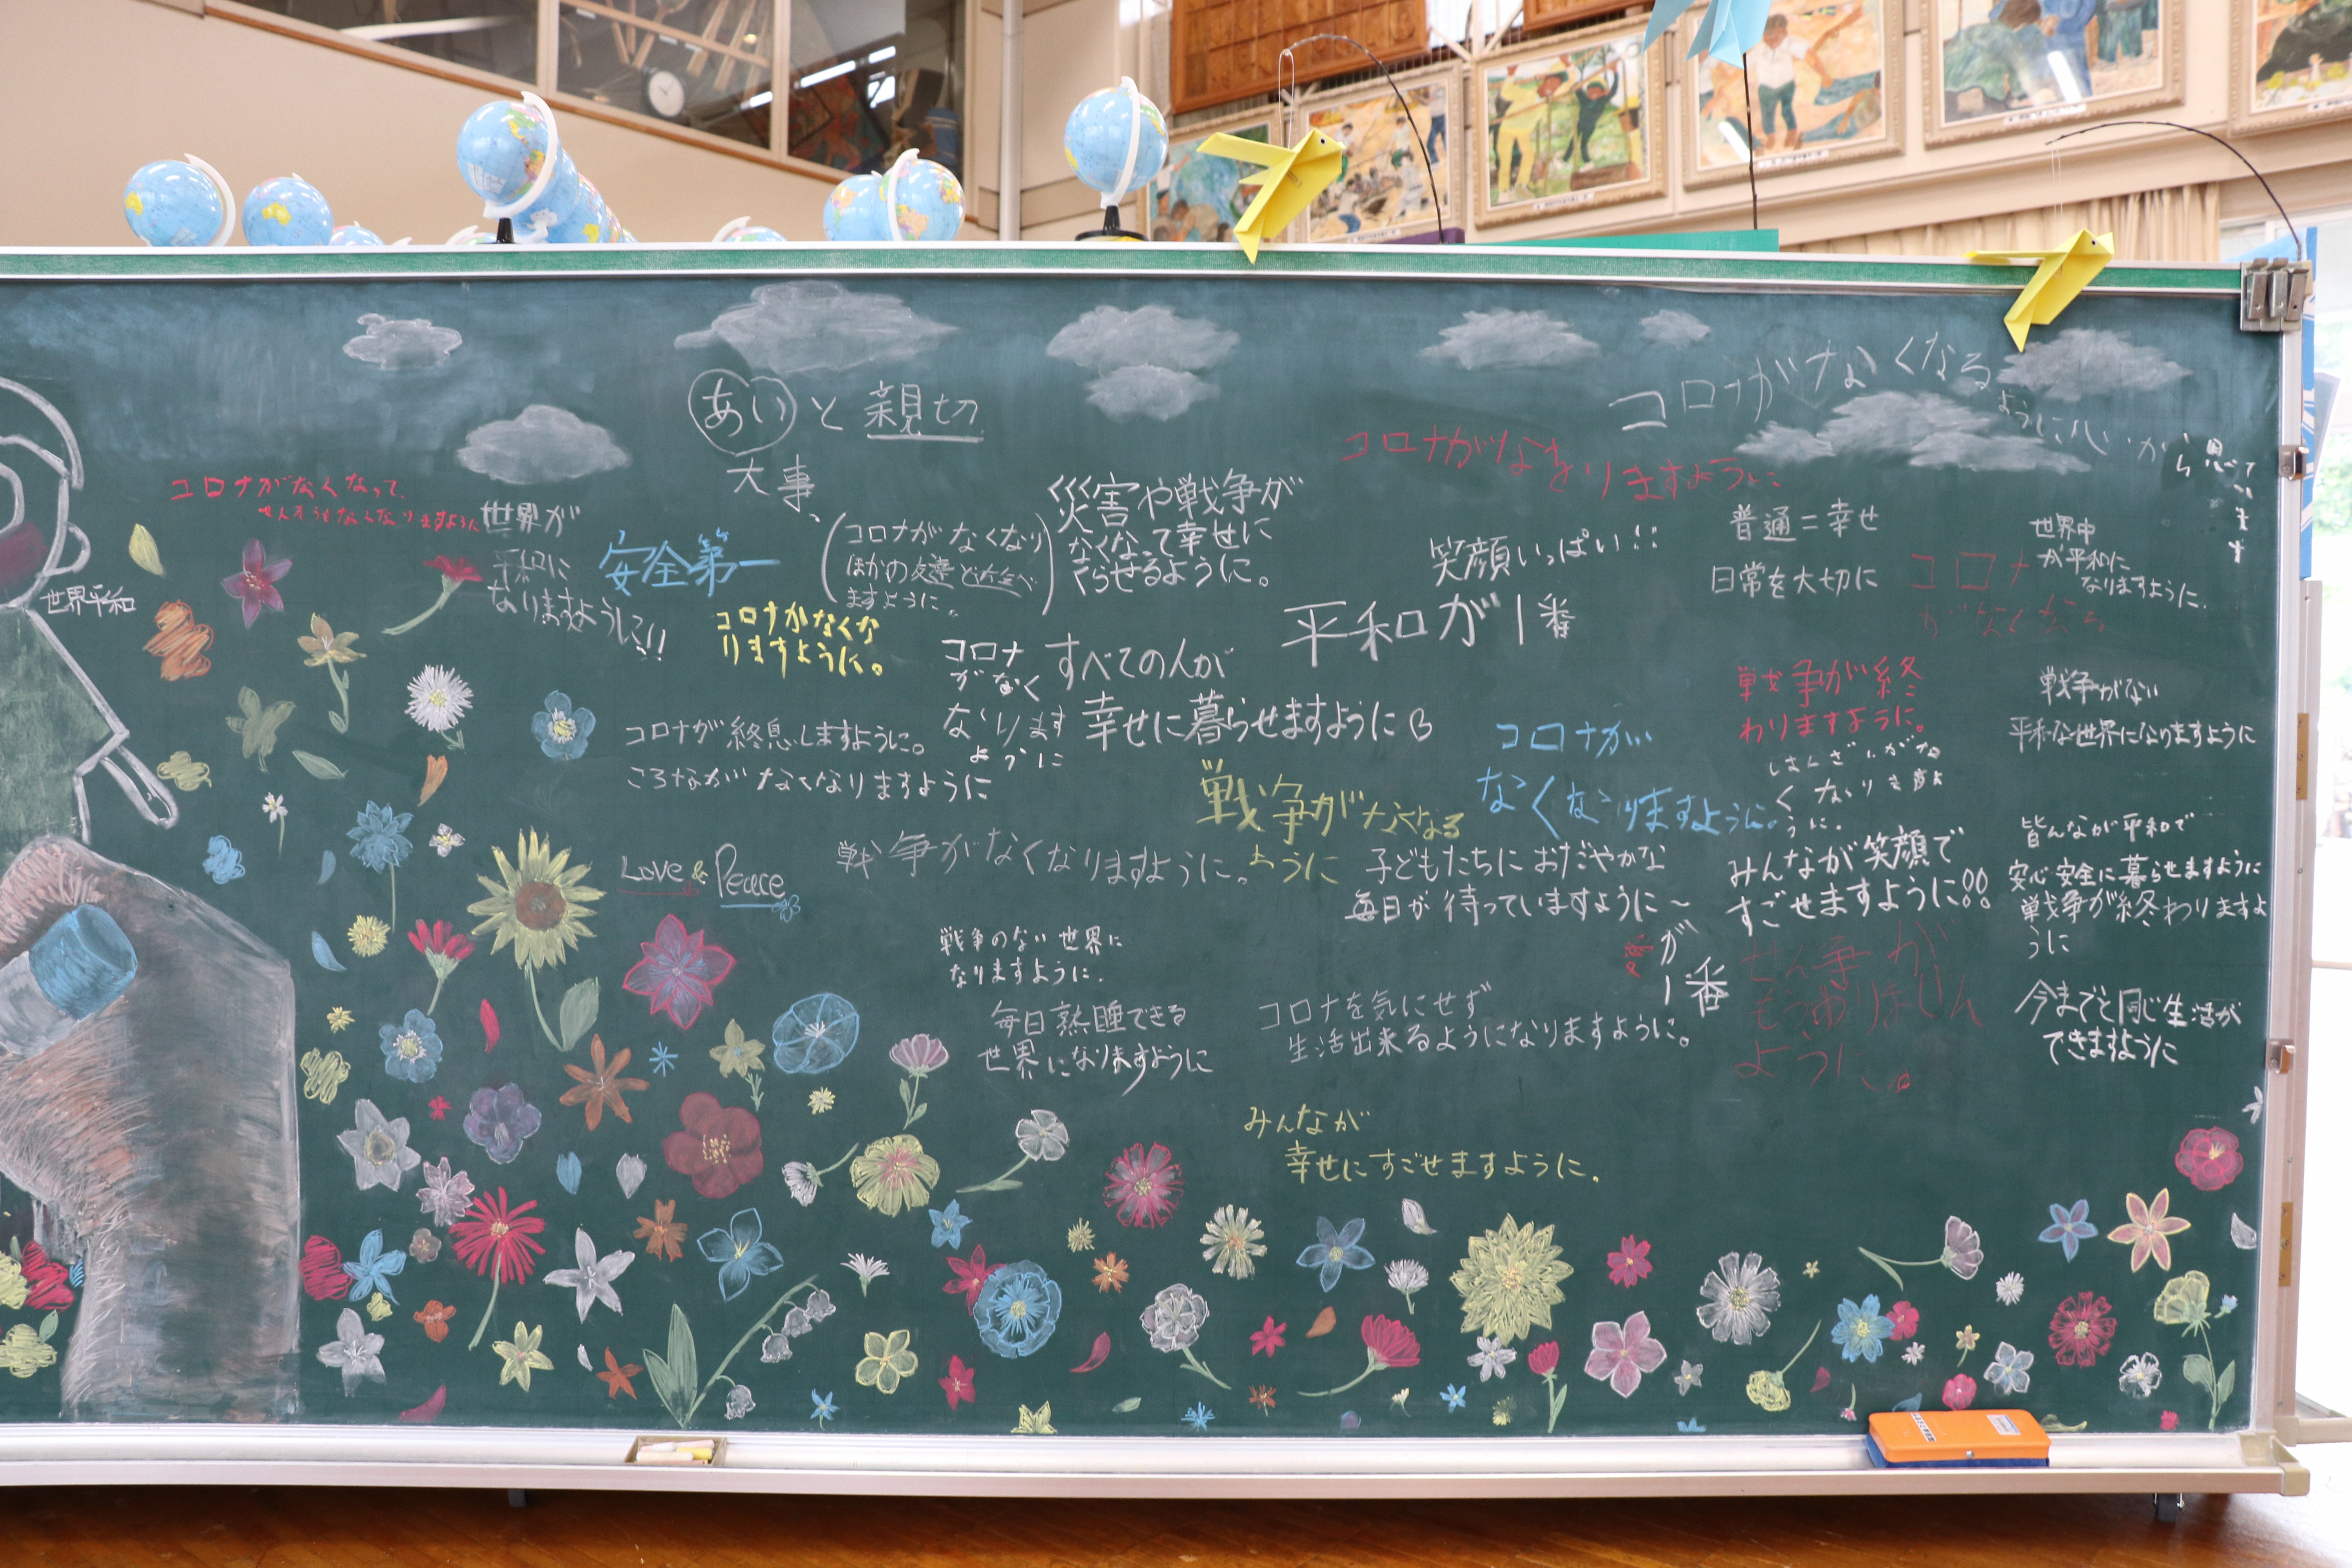 黒板に描かれている平和を願う数々のメッセージ